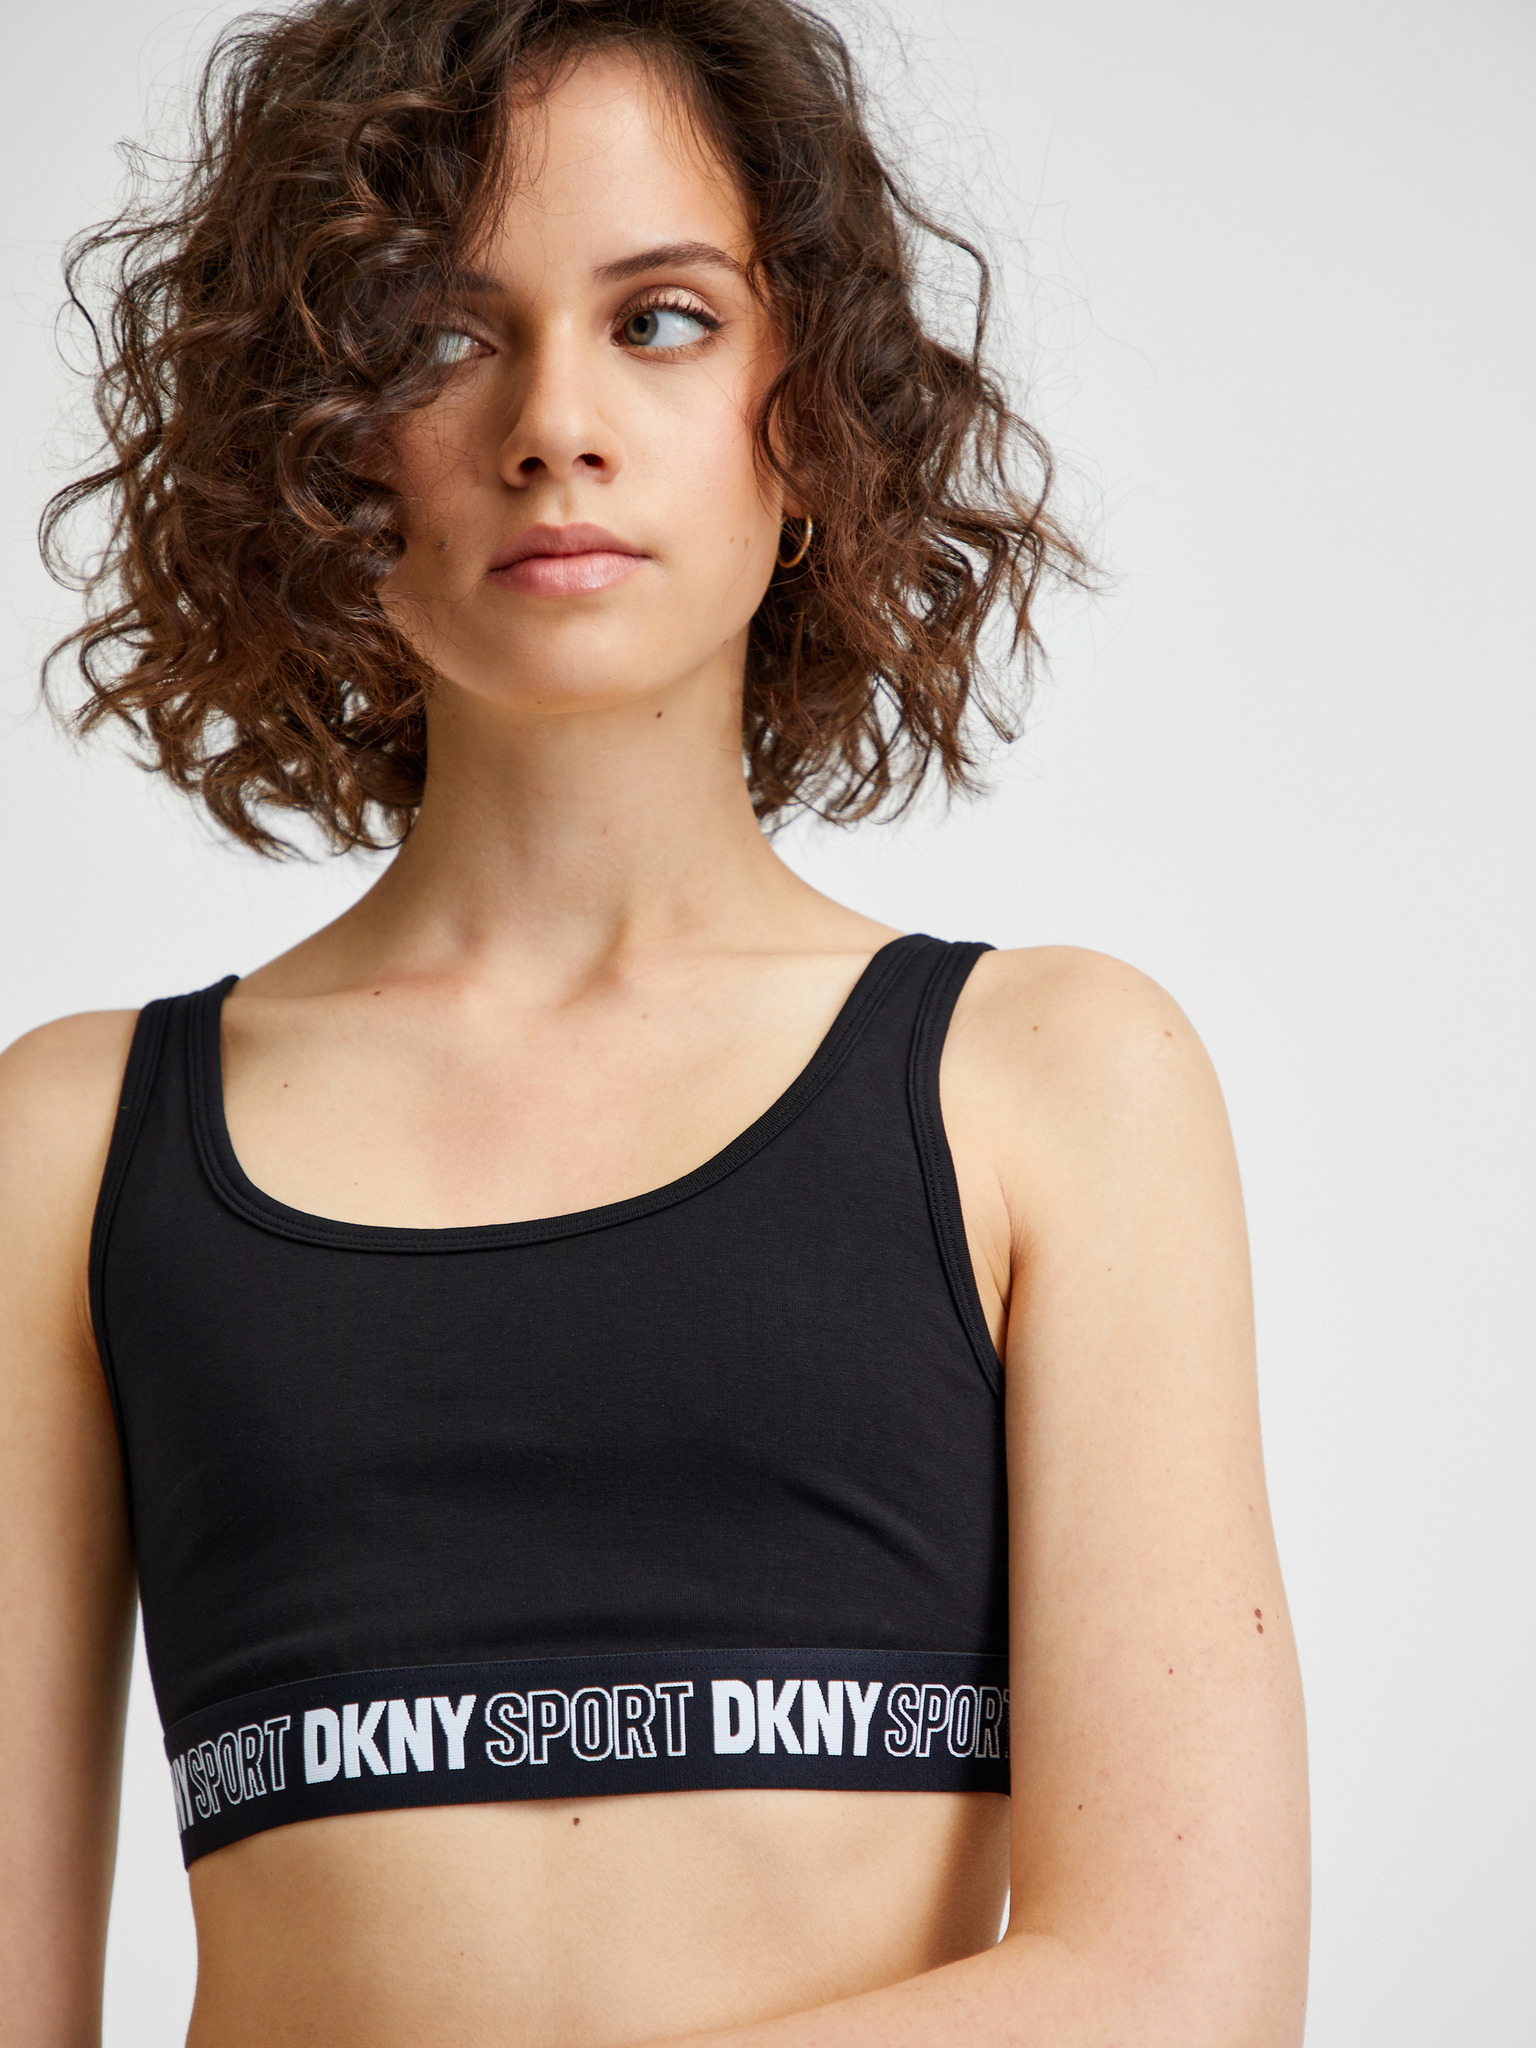 DKNY Sport Strappy Sports Bra Dark Grey S M L  Strappy sports bras, Sports  bra, Clothes design